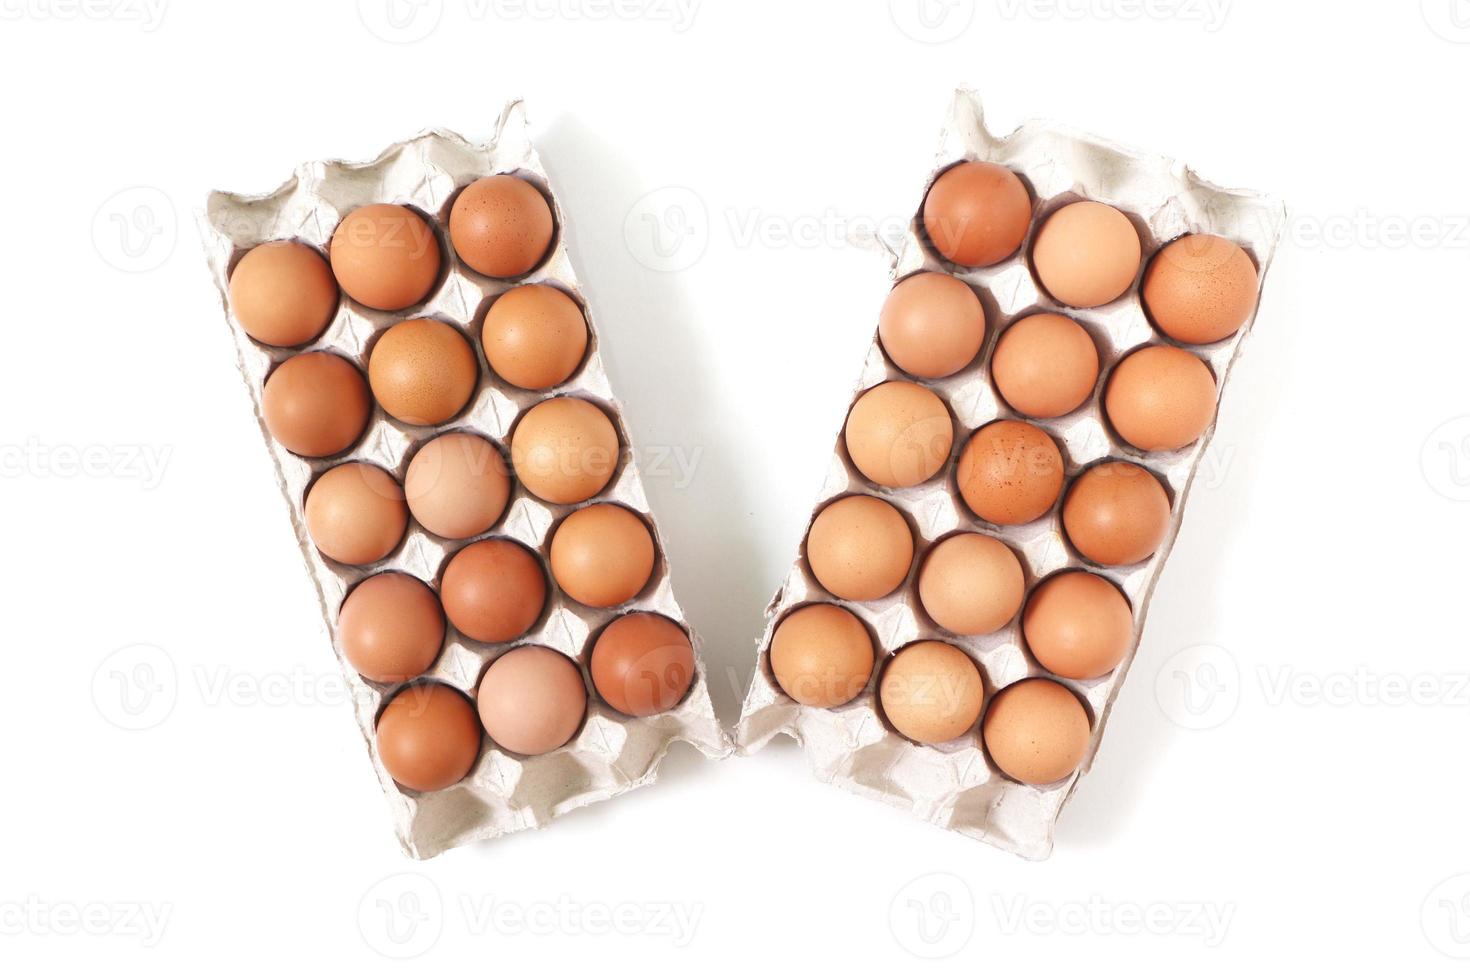 uova di pollo nel vassoio della carta su sfondo bianco. vista dall'alto. foto